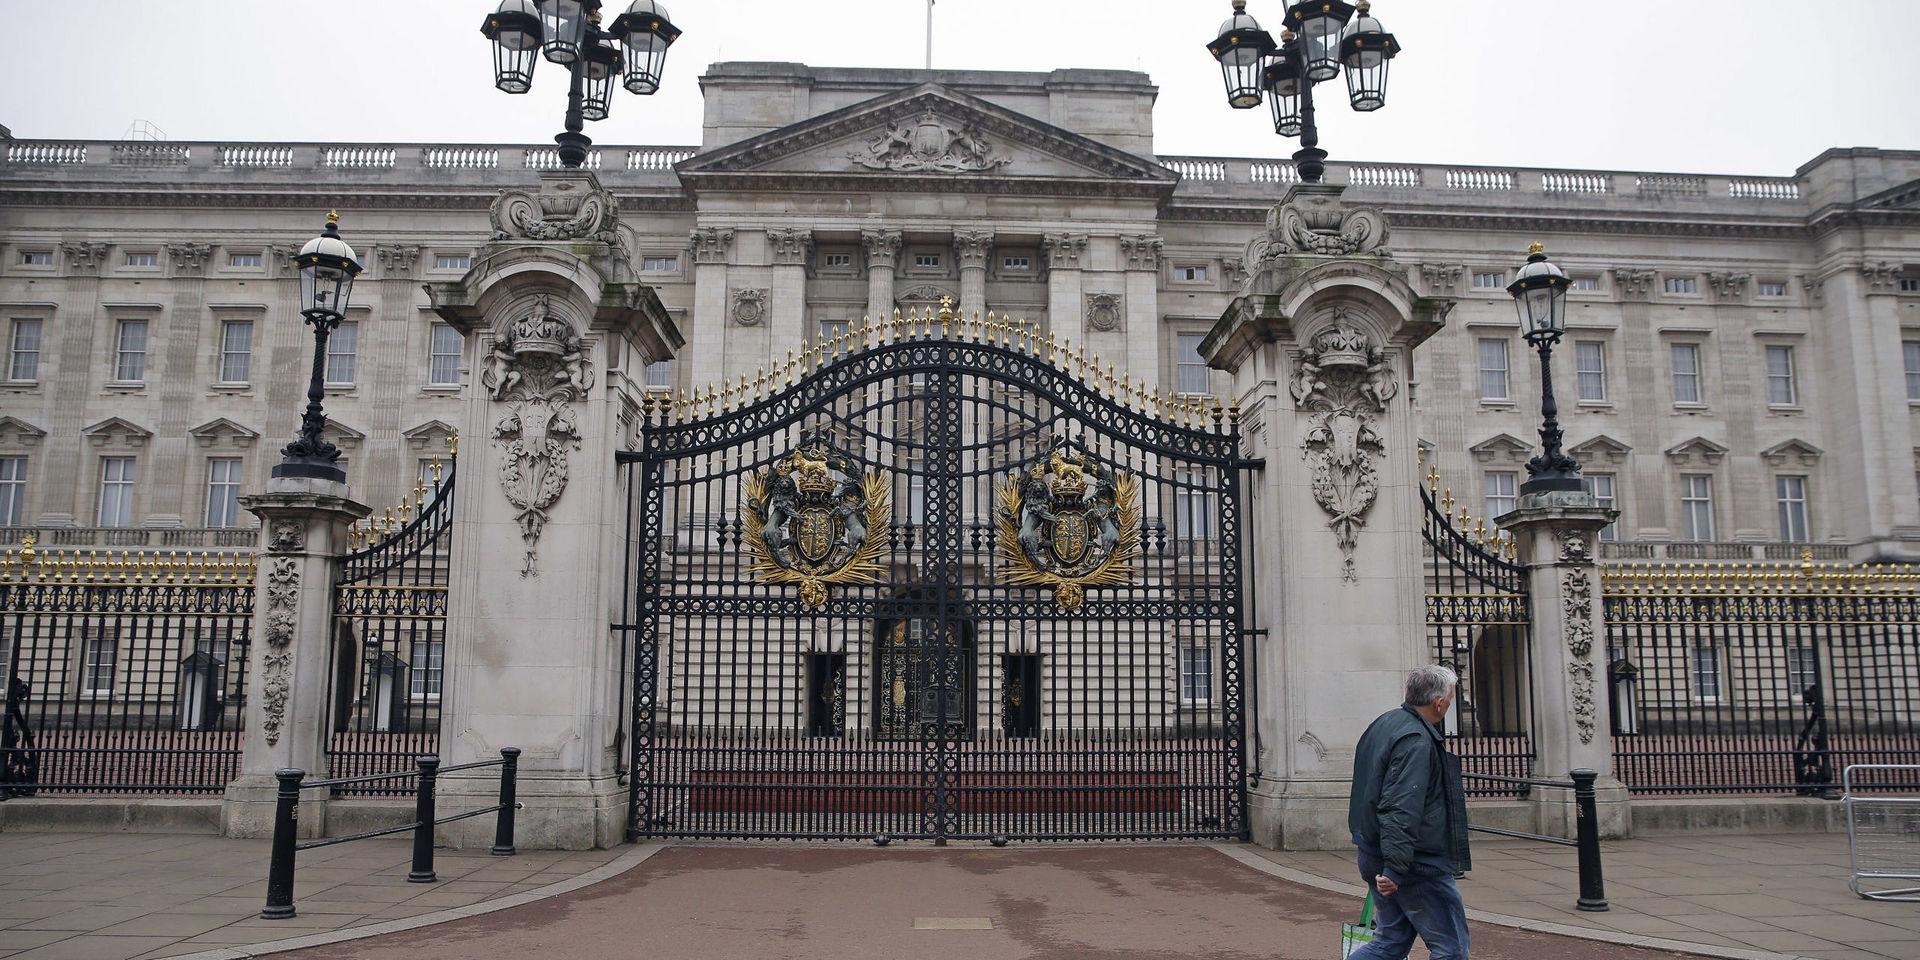 En man lyckades ta sig över grindarna som skyddar Buckingham Palace. Arkivbild.